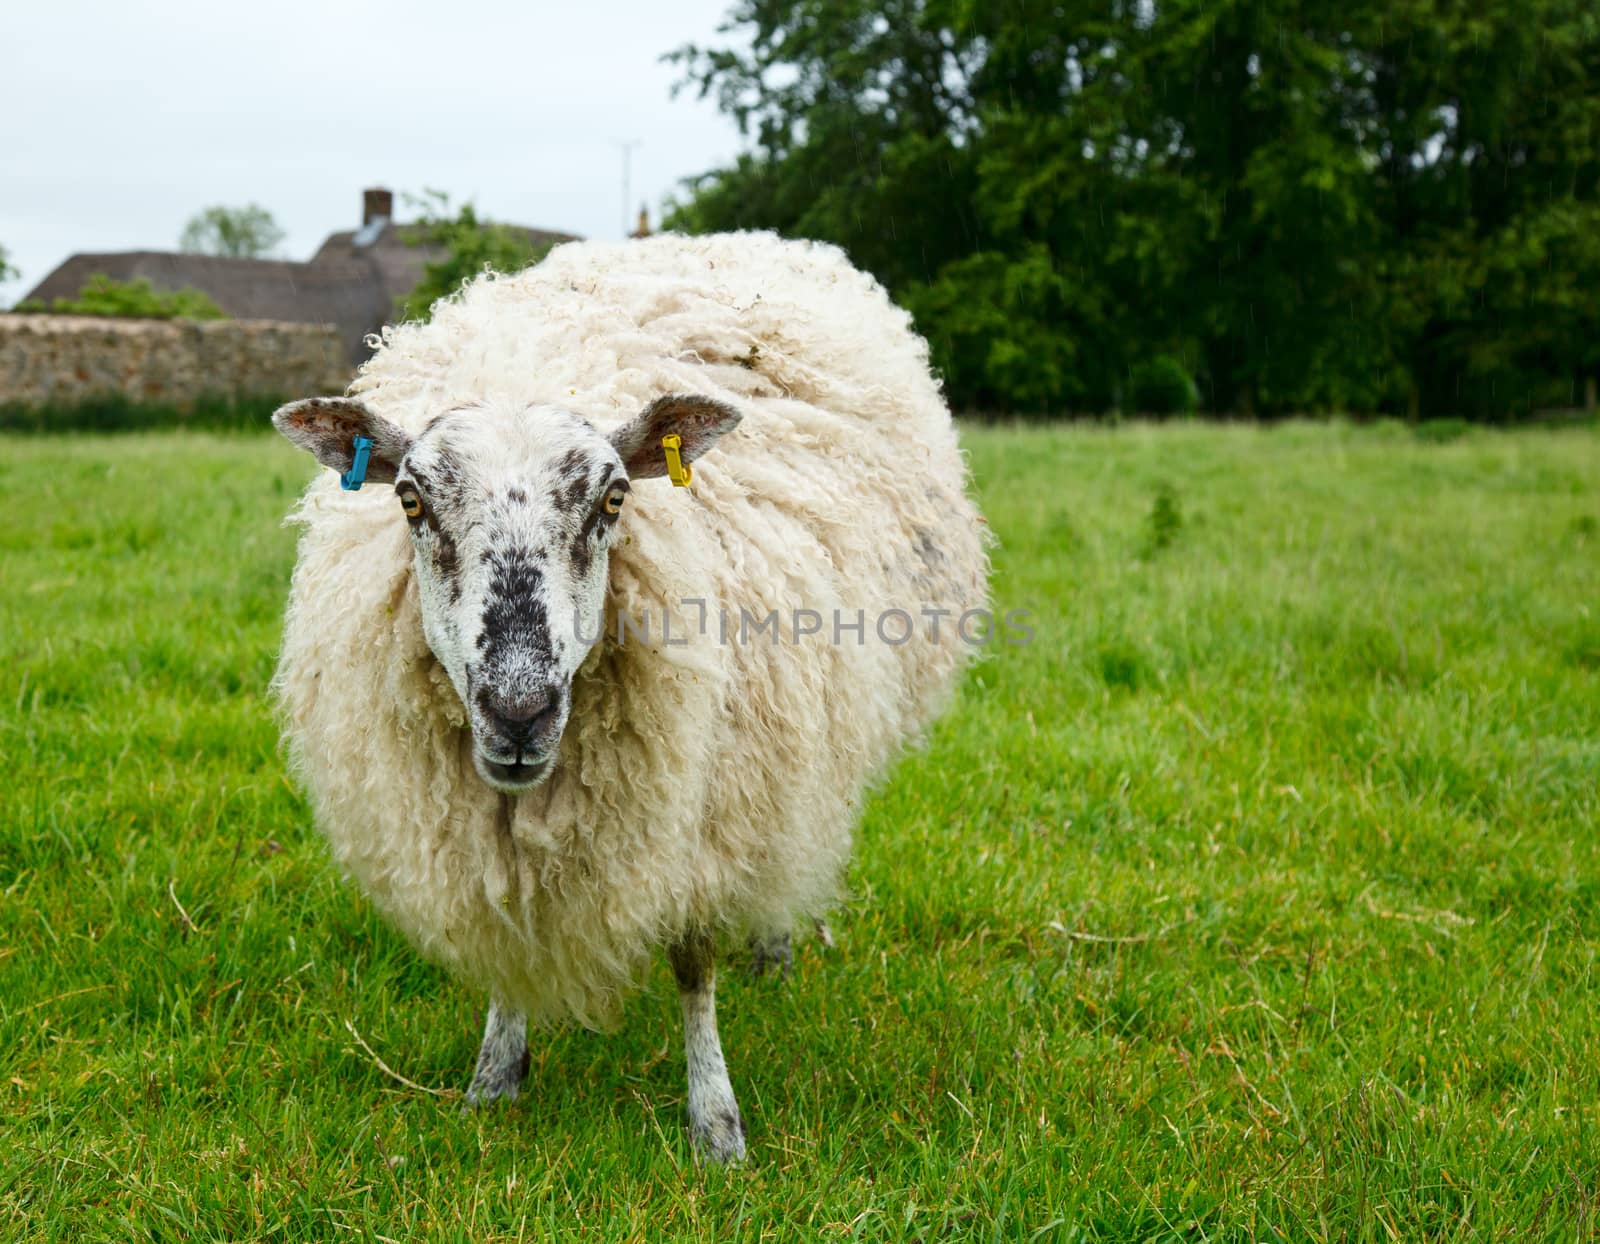 Sheep by naumoid